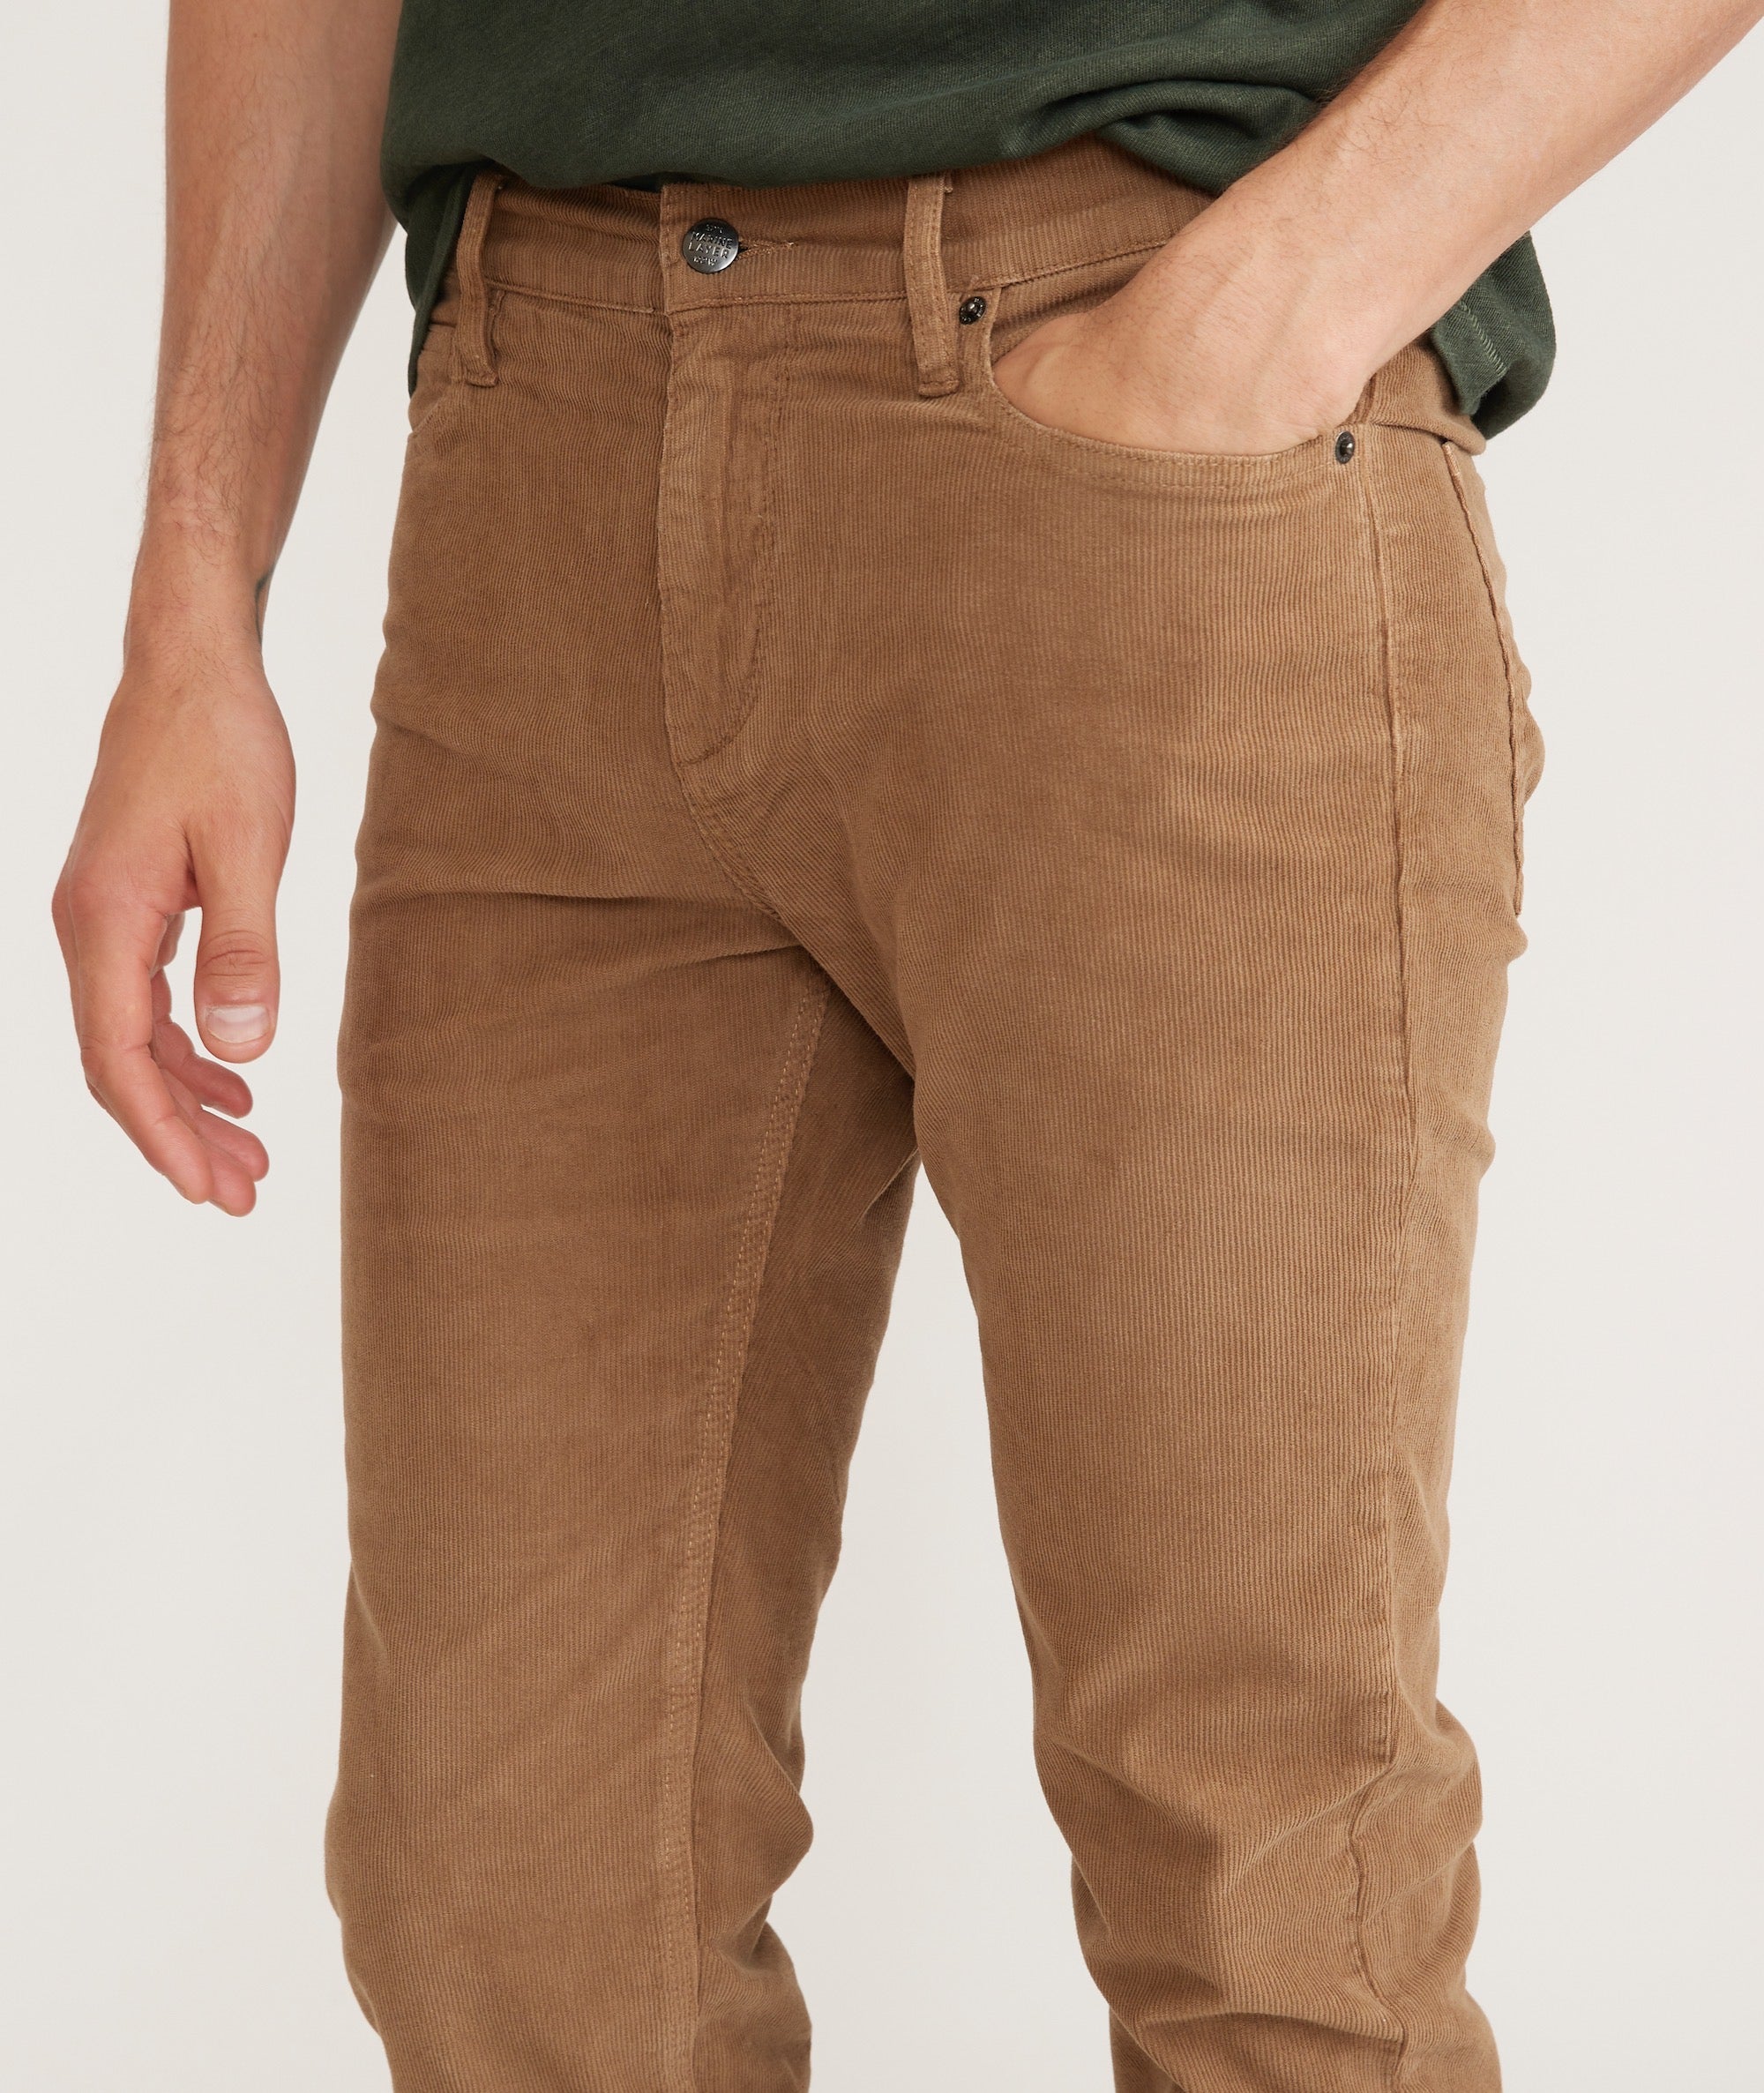 Mens Corduroy Pants - Shop Cotton Trousers Men Online